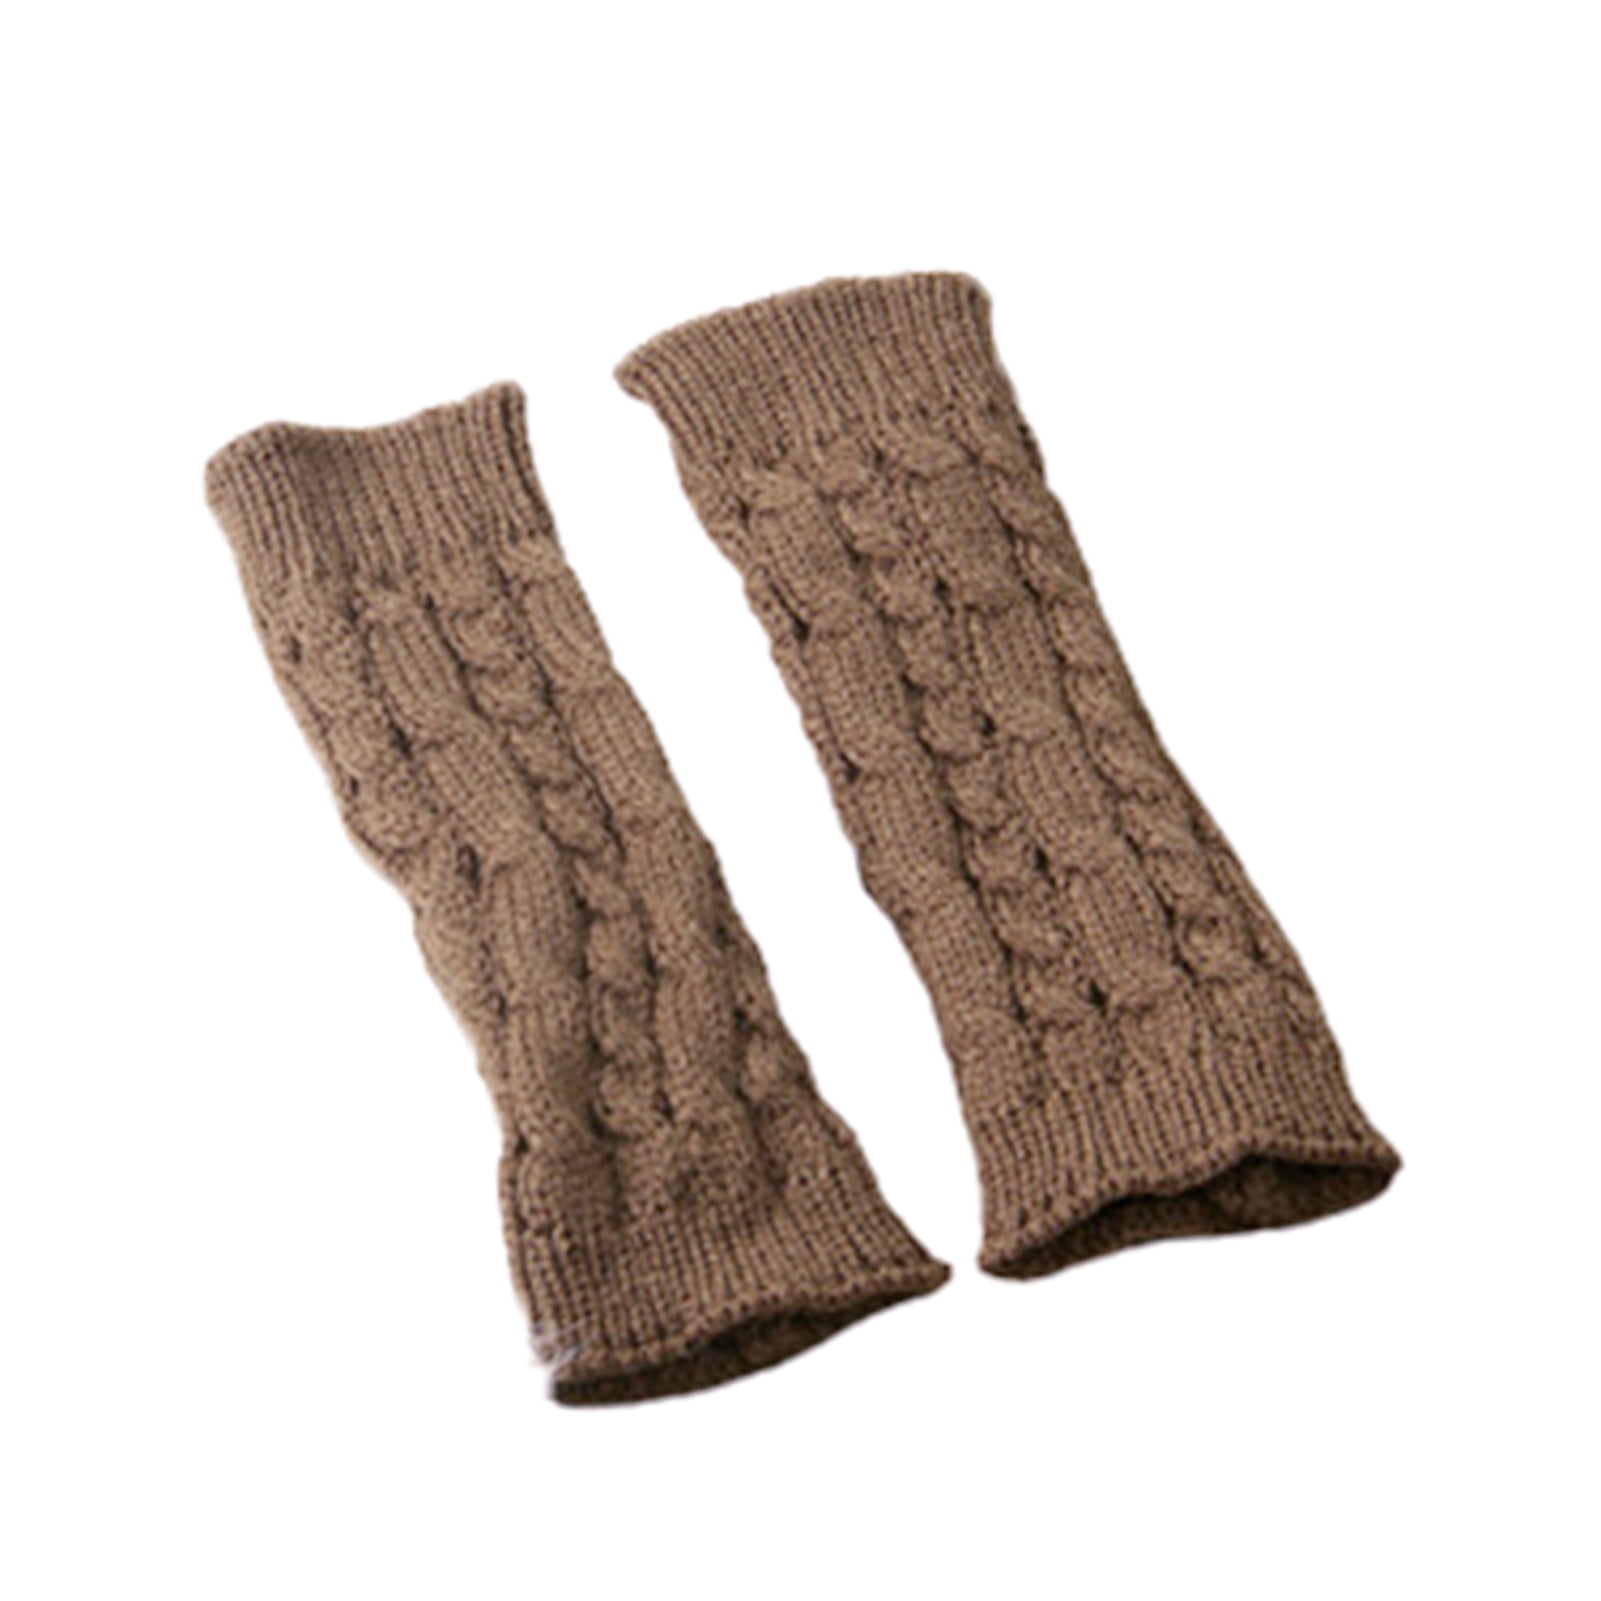 Details about   Mens Women Winter Warm Knitted Fingerless Half Finger Gloves Mitten Strech Soft 